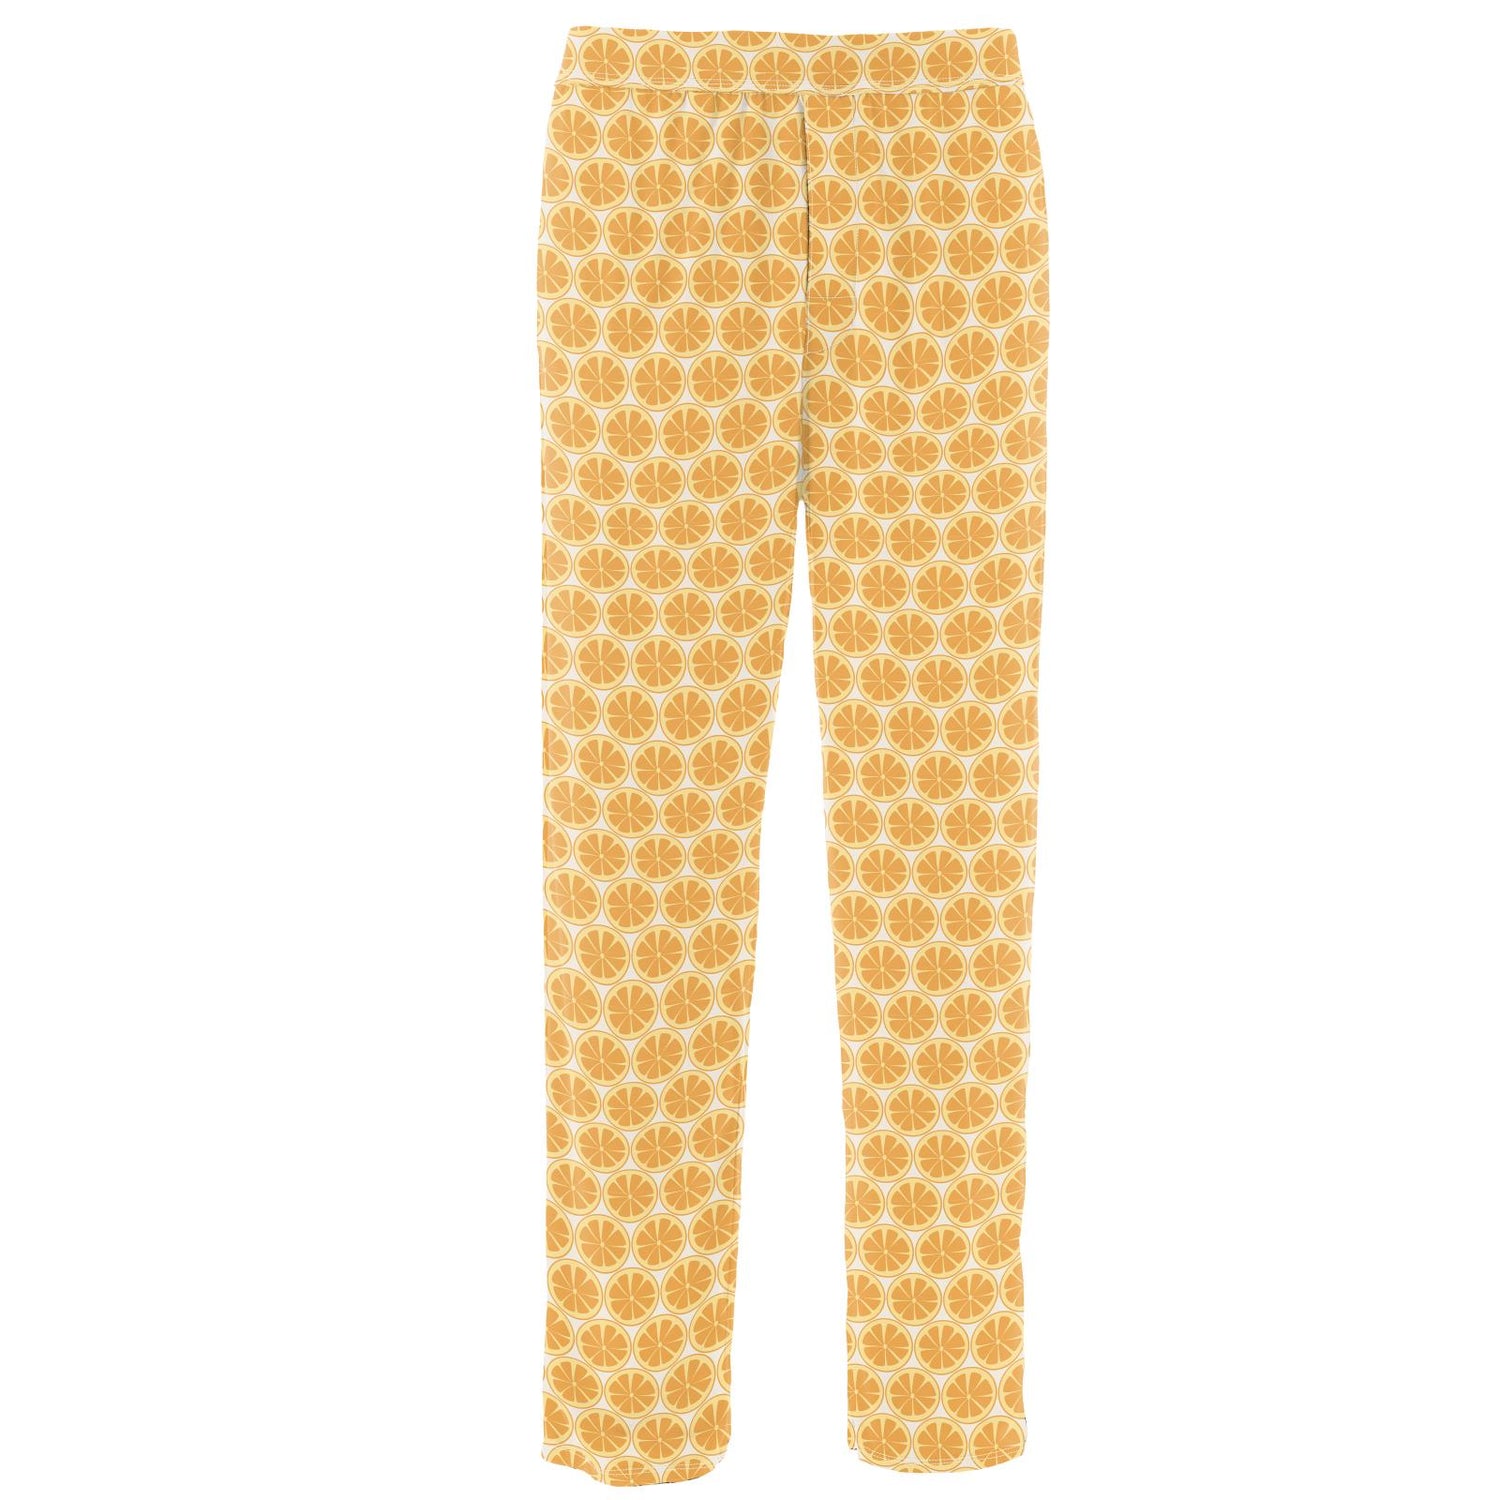 Men's Print Pajama Pants in Natural Lemons